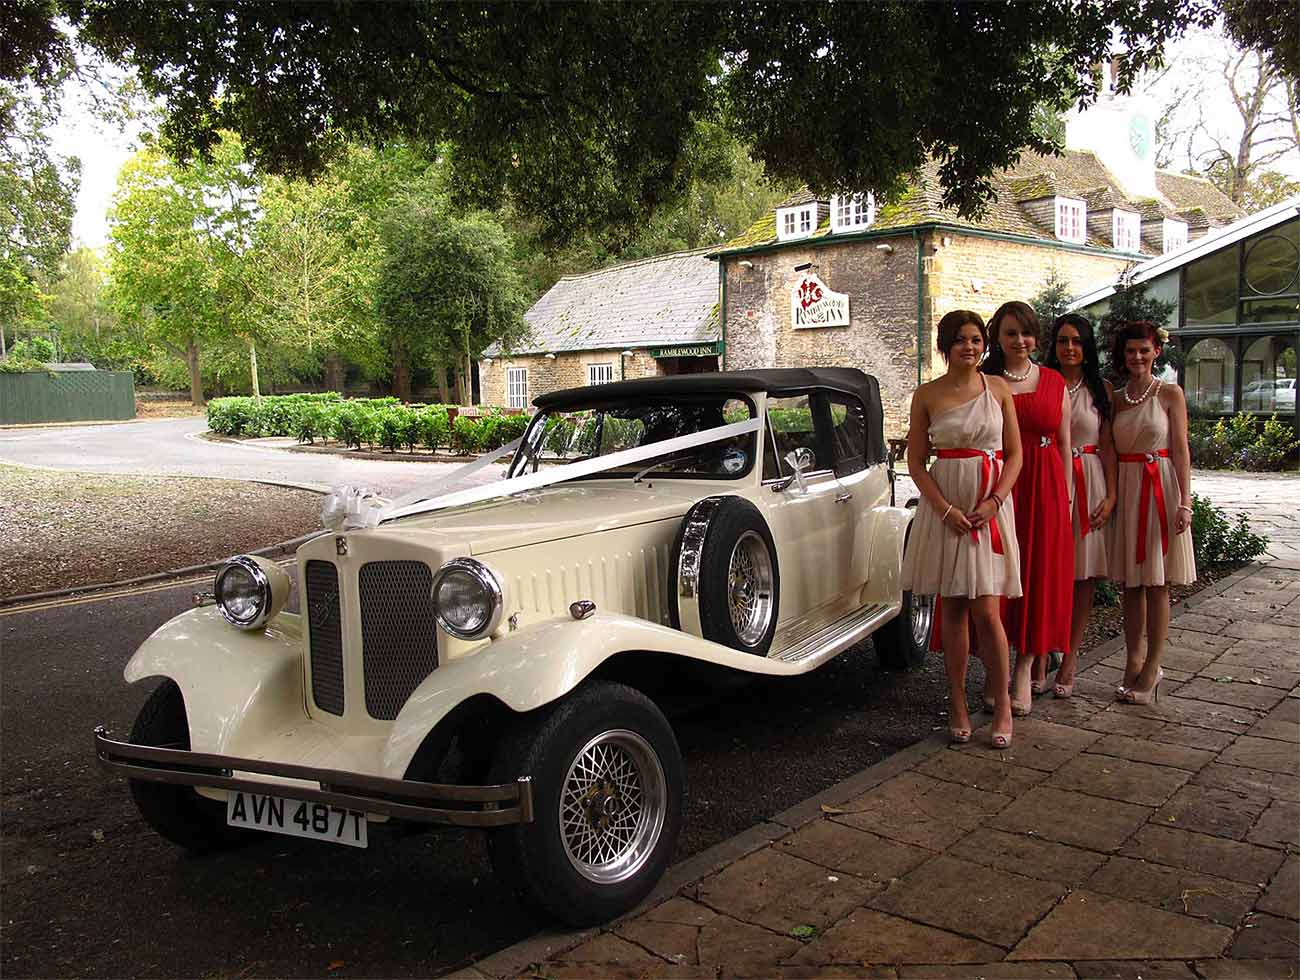 Elegant Event's wedding car, Orton Hall, Orton Longueville, Peterborough